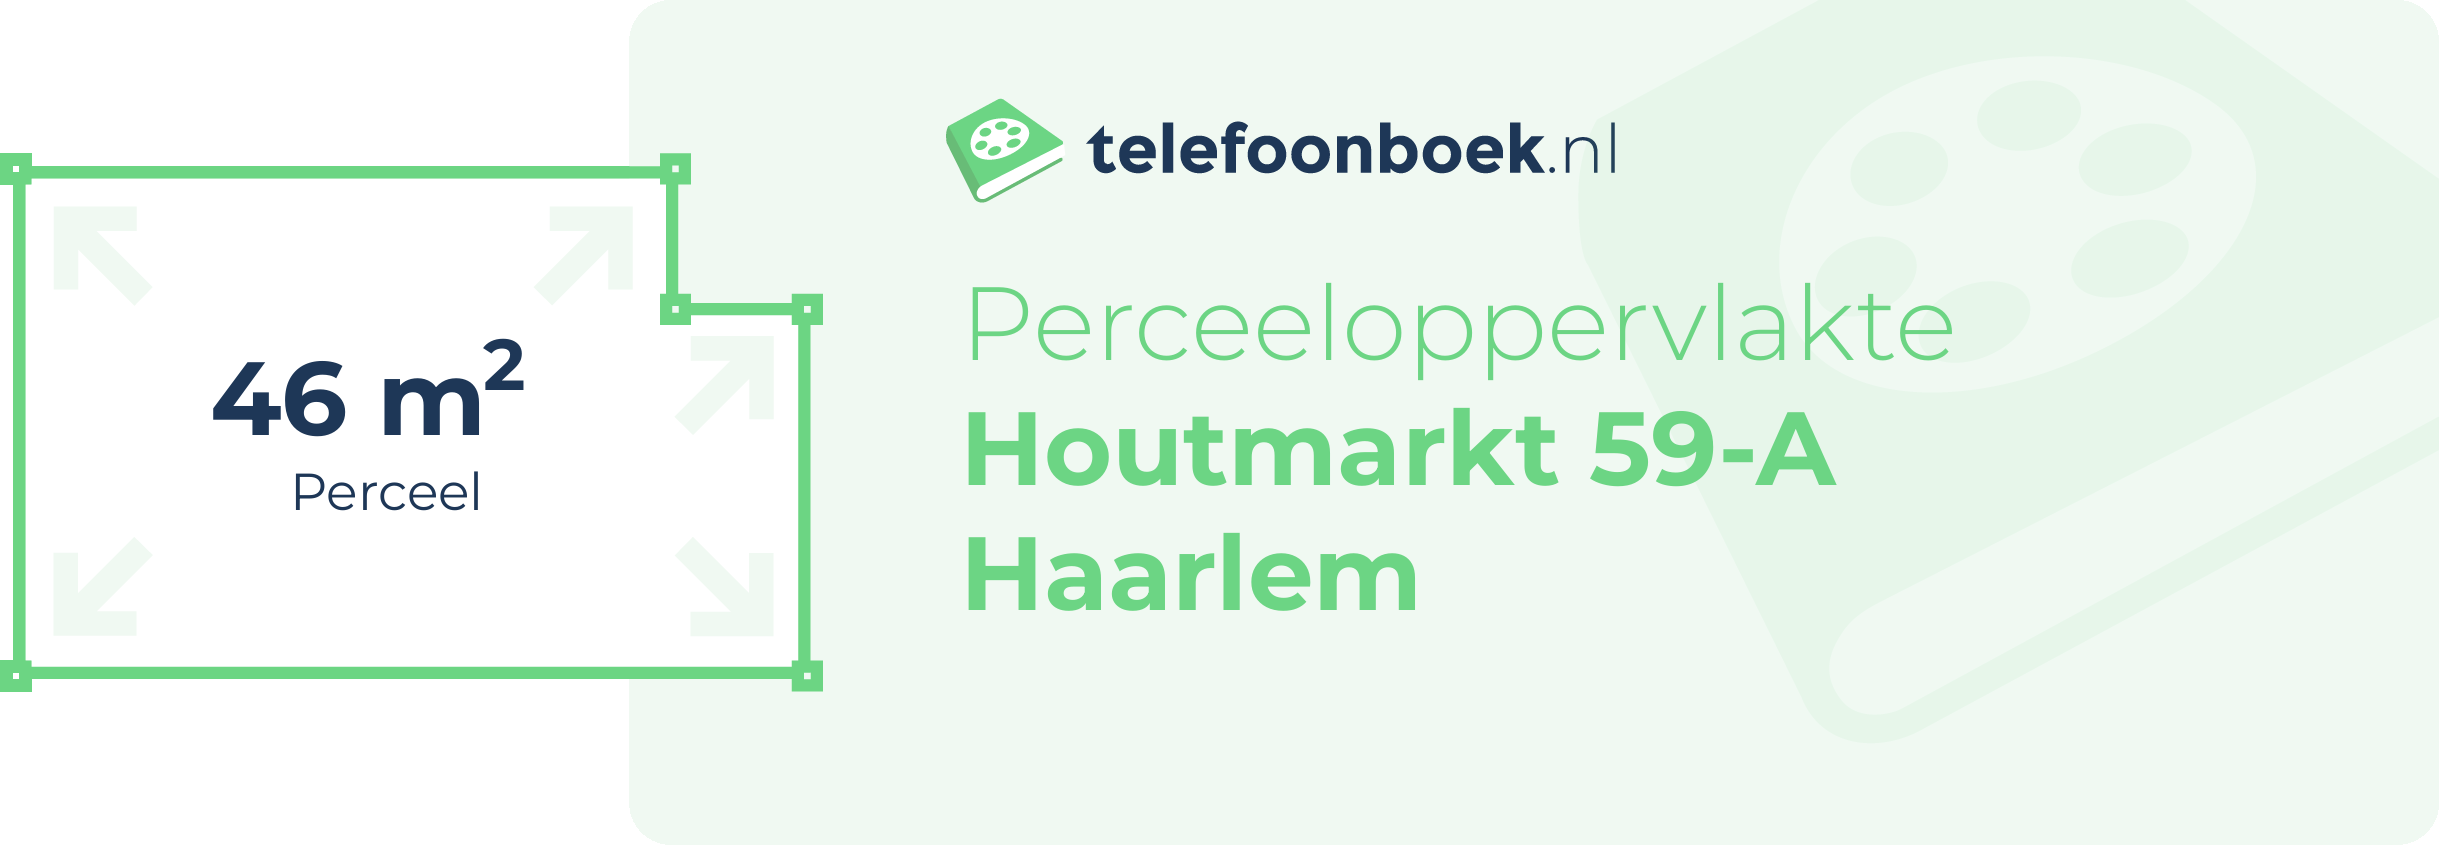 Perceeloppervlakte Houtmarkt 59-A Haarlem